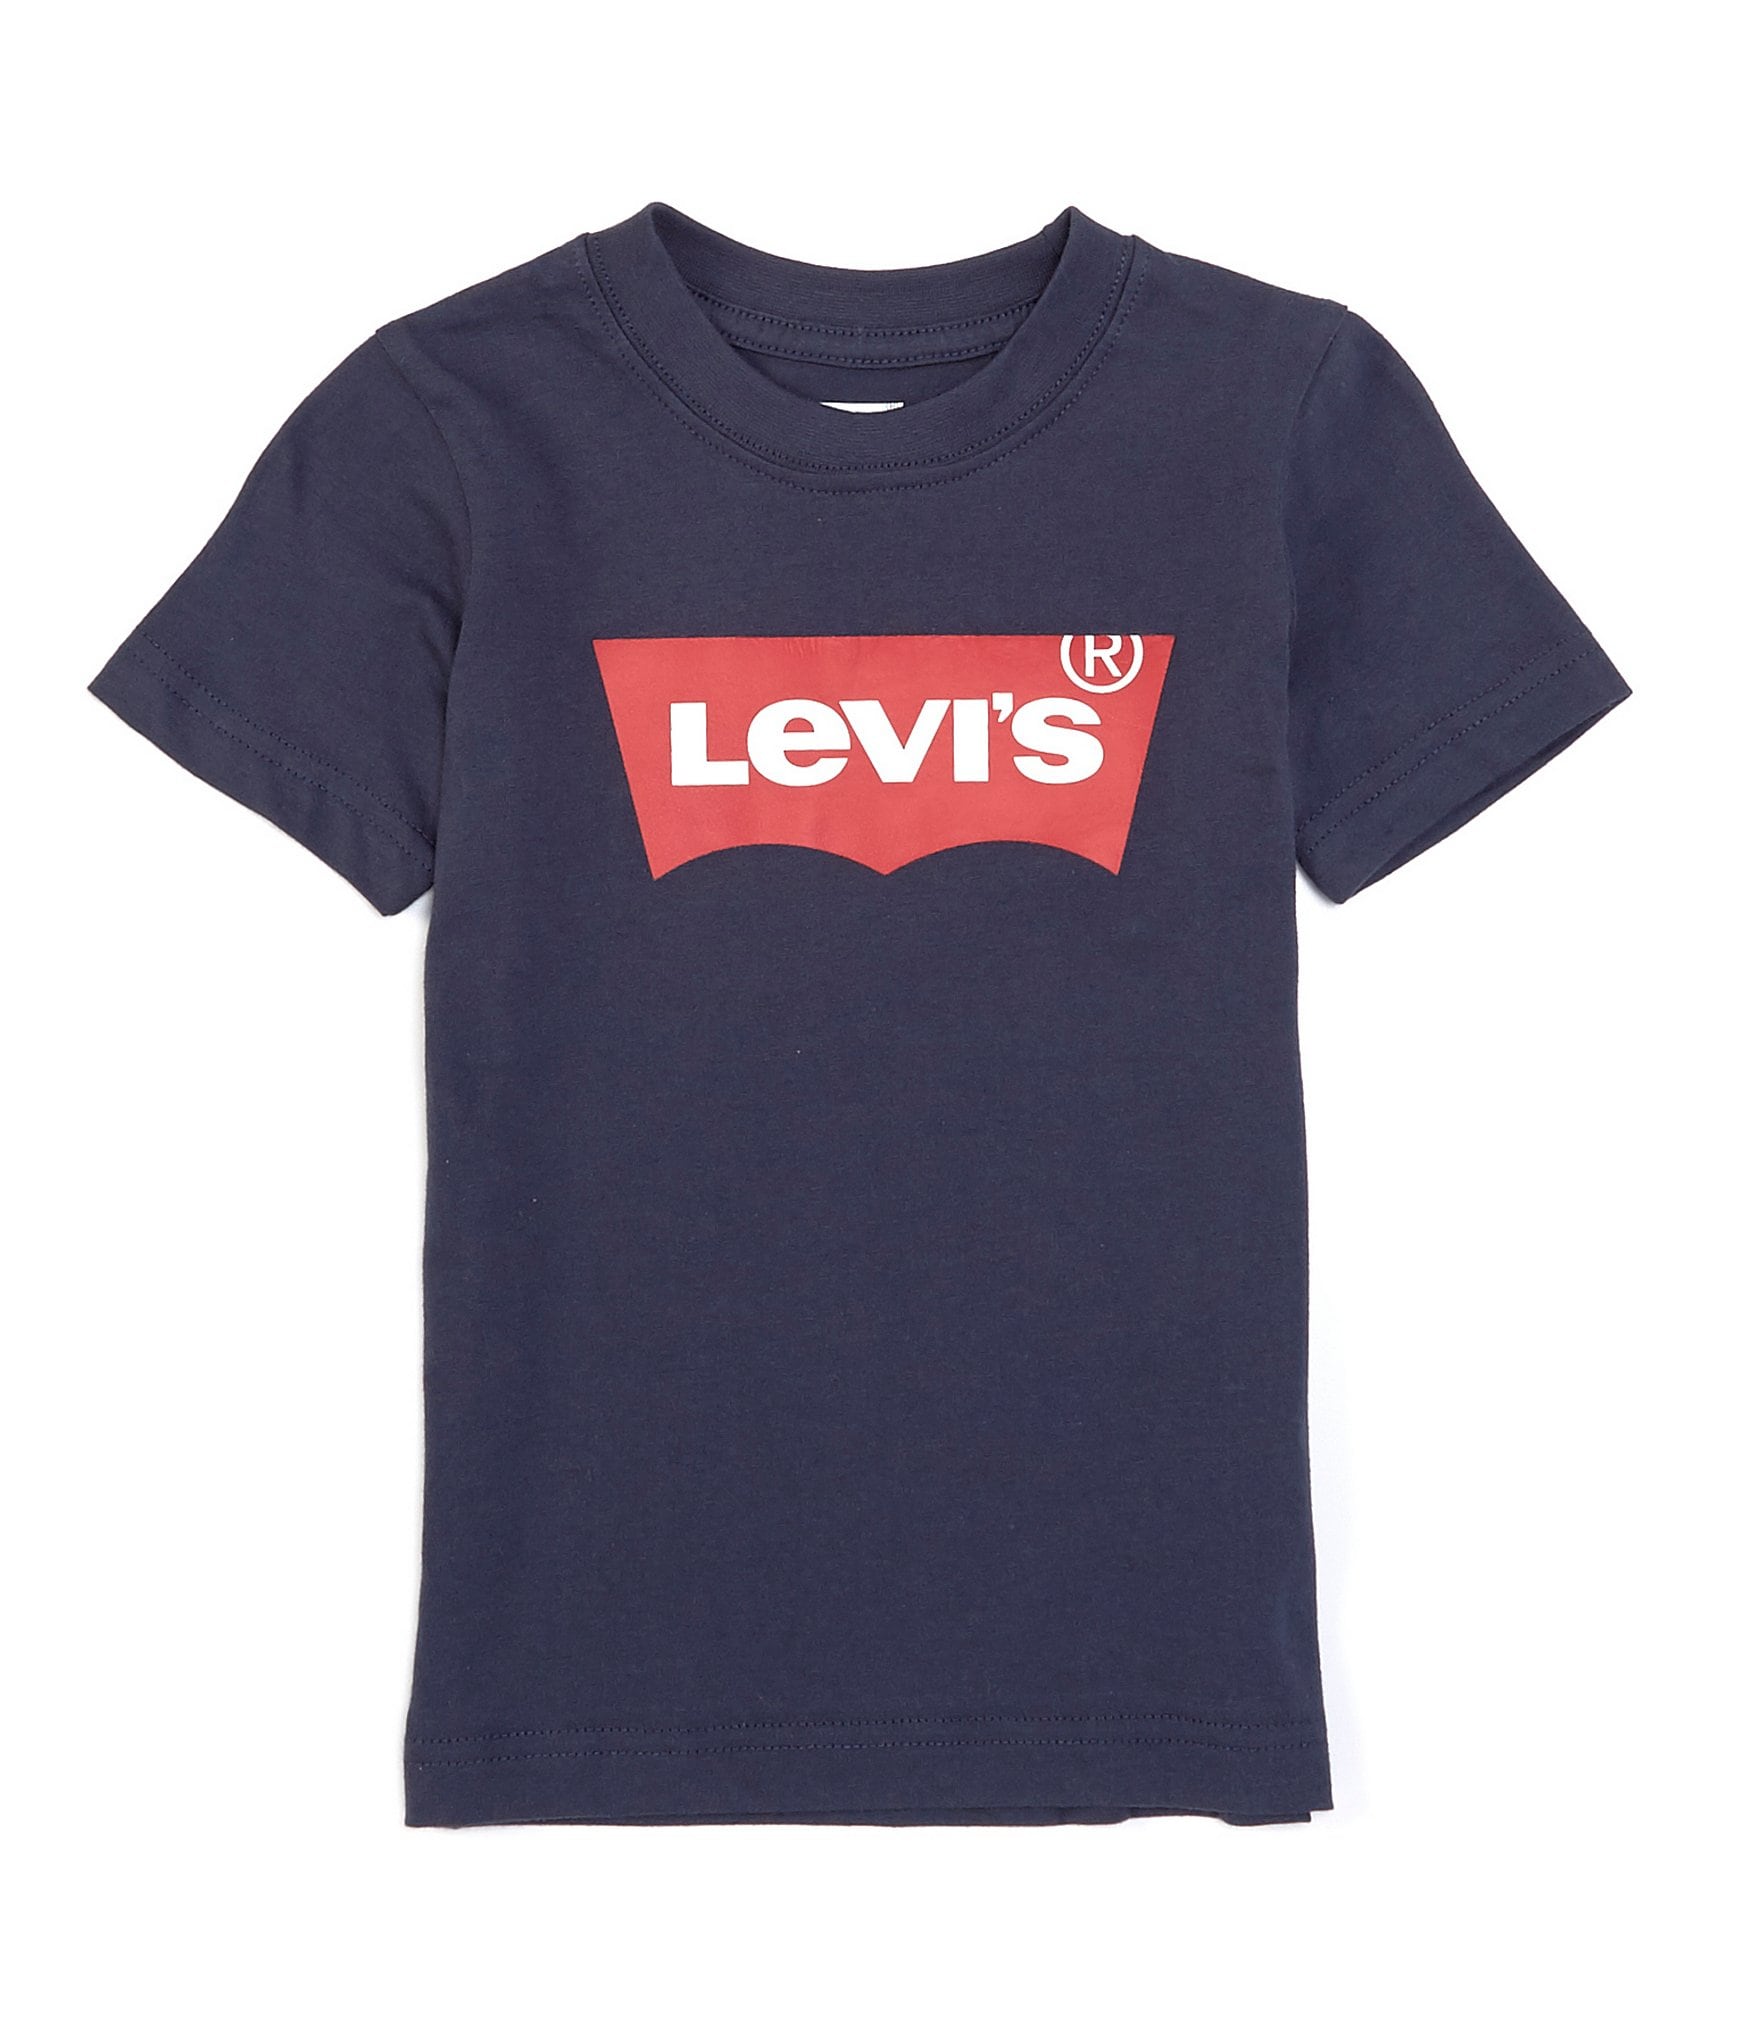 levis kids tshirt